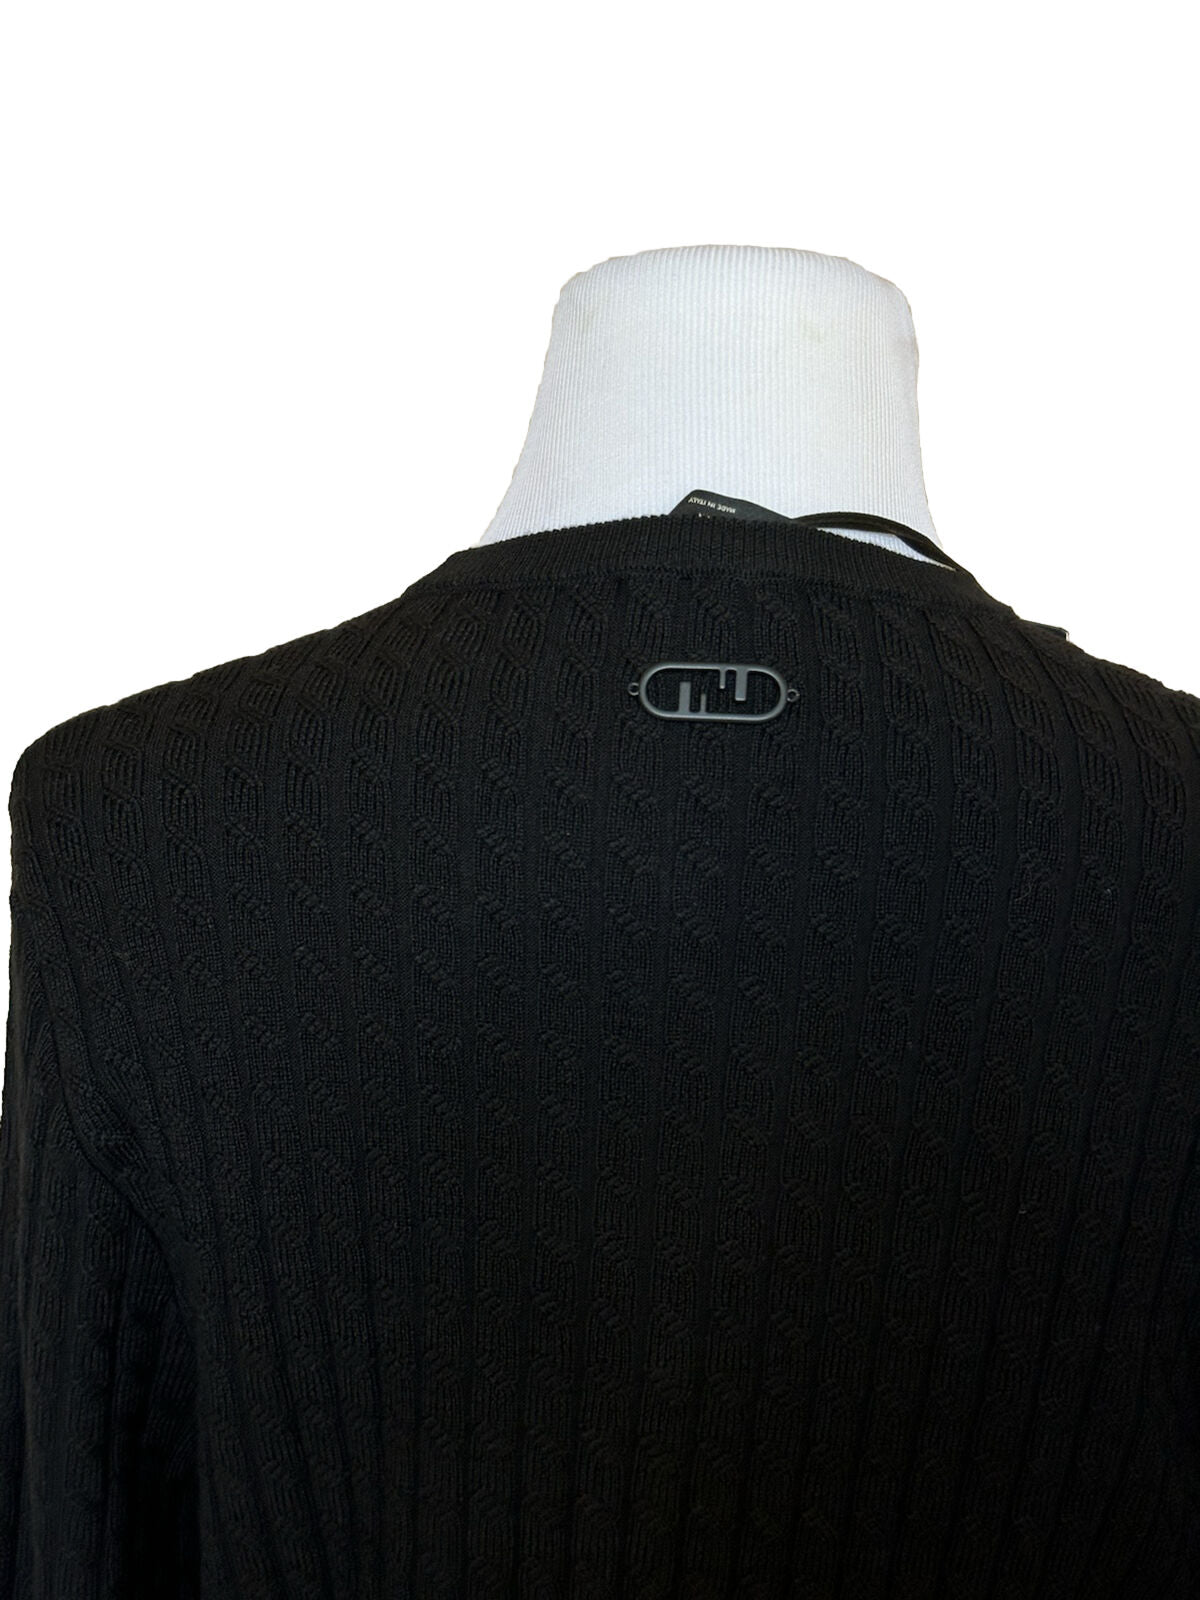 СЗТ 1250 долларов США Fendi Шерстяной вязаный пуловер Черный 52 евро FZX077 Сделано в Италии 